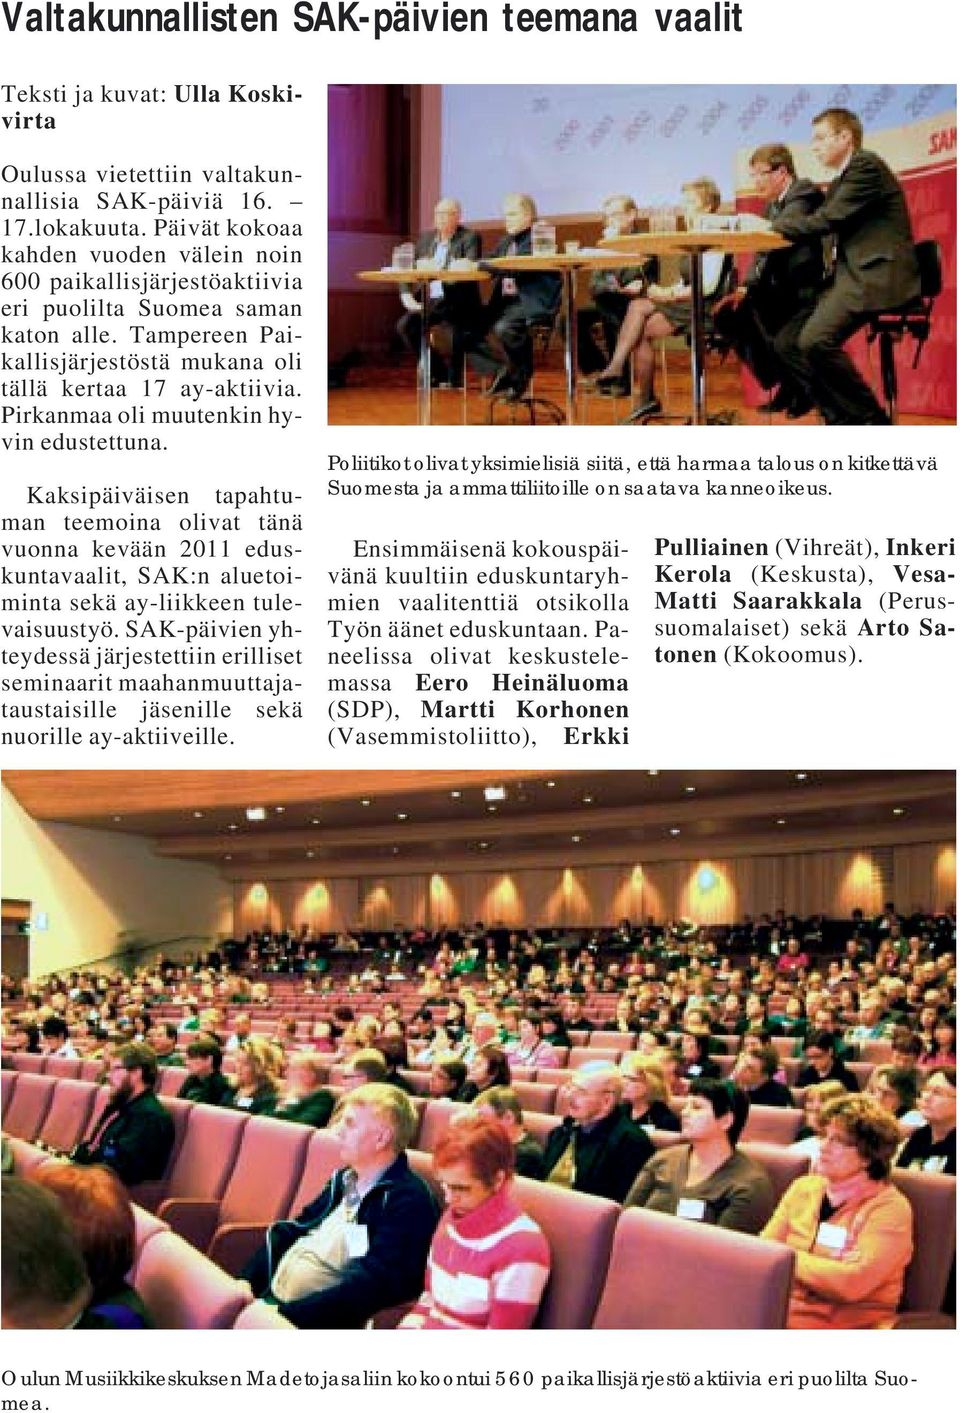 Pirkanmaa oli muutenkin hyvin edustettuna. Kaksipäiväisen tapahtuman teemoina olivat tänä vuonna kevään 2011 eduskuntavaalit, SAK:n aluetoiminta sekä ay-liikkeen tulevaisuustyö.